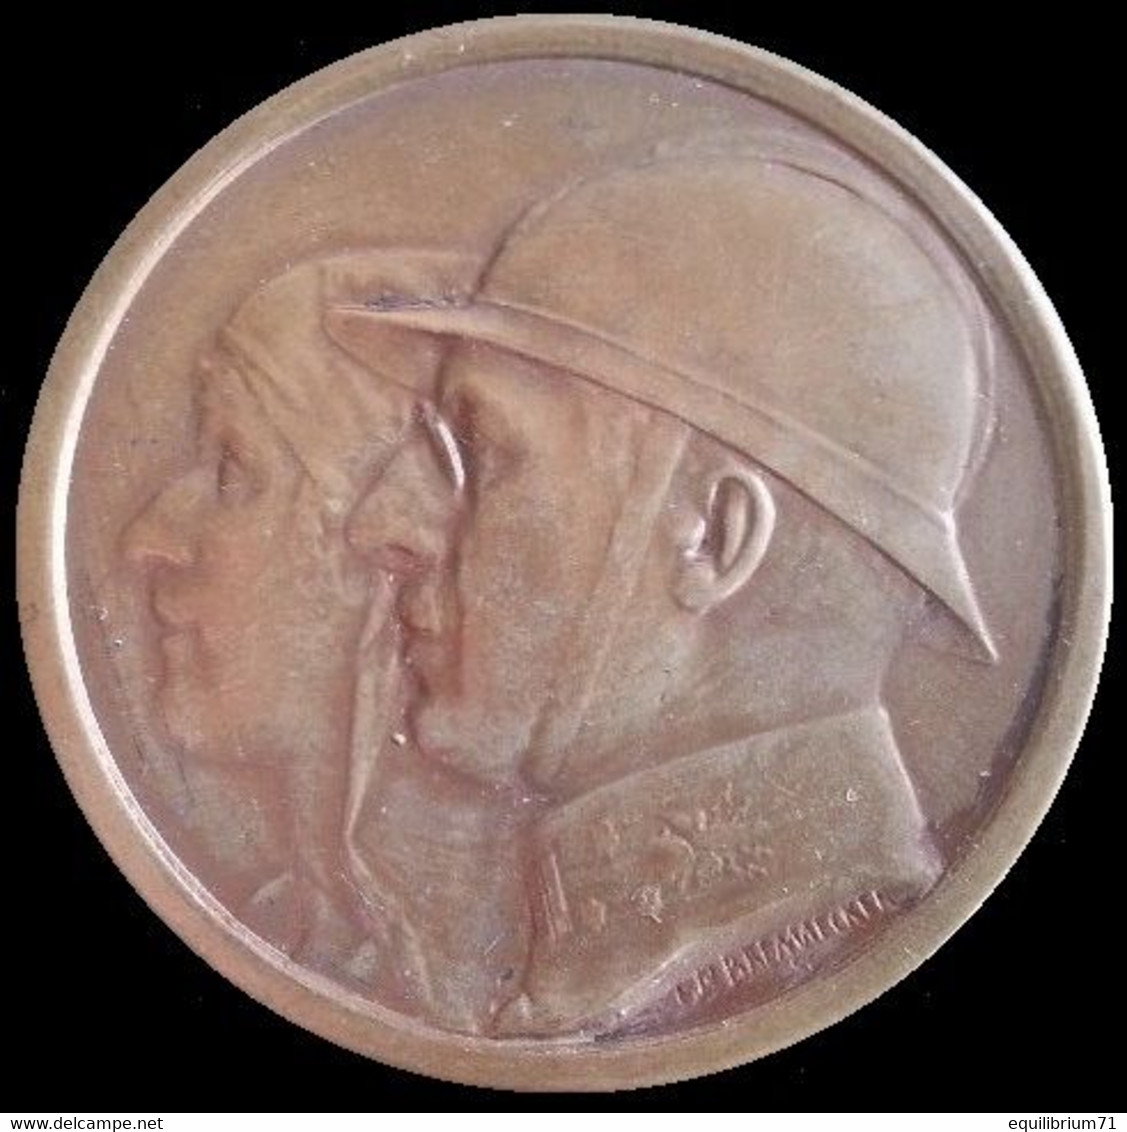 Médaille Commémorative XXéme Anniversaire UFAC  / Herinneringsmedaille  VVV XXe Verjaring - 1929-14-18-1949 - Monarchia / Nobiltà